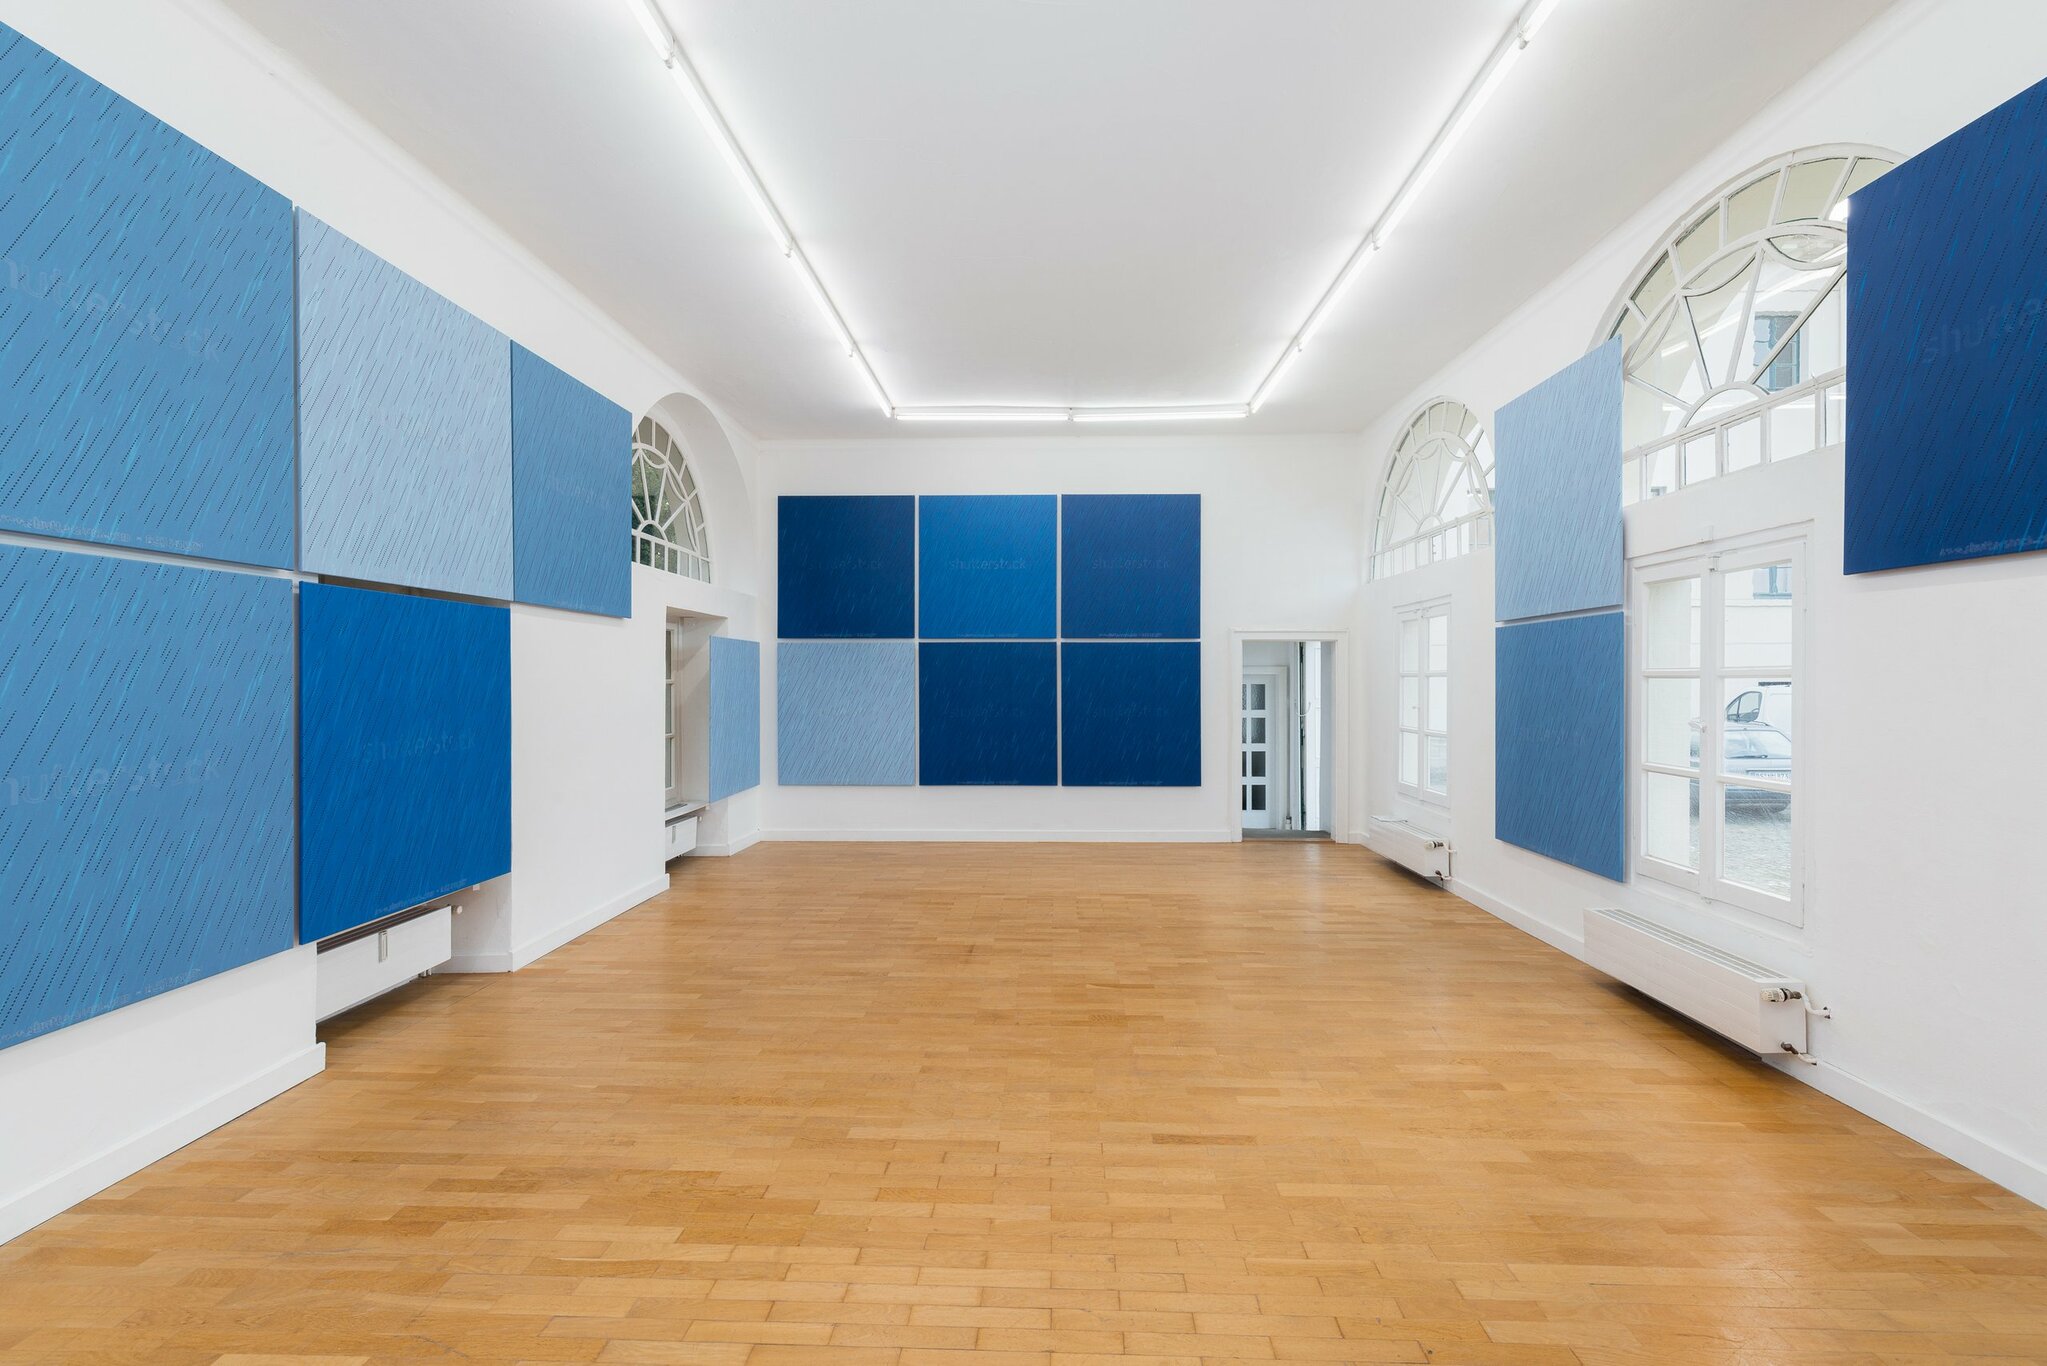 The Cascades, Kunstverein Braunschweig, 2020 - 2021